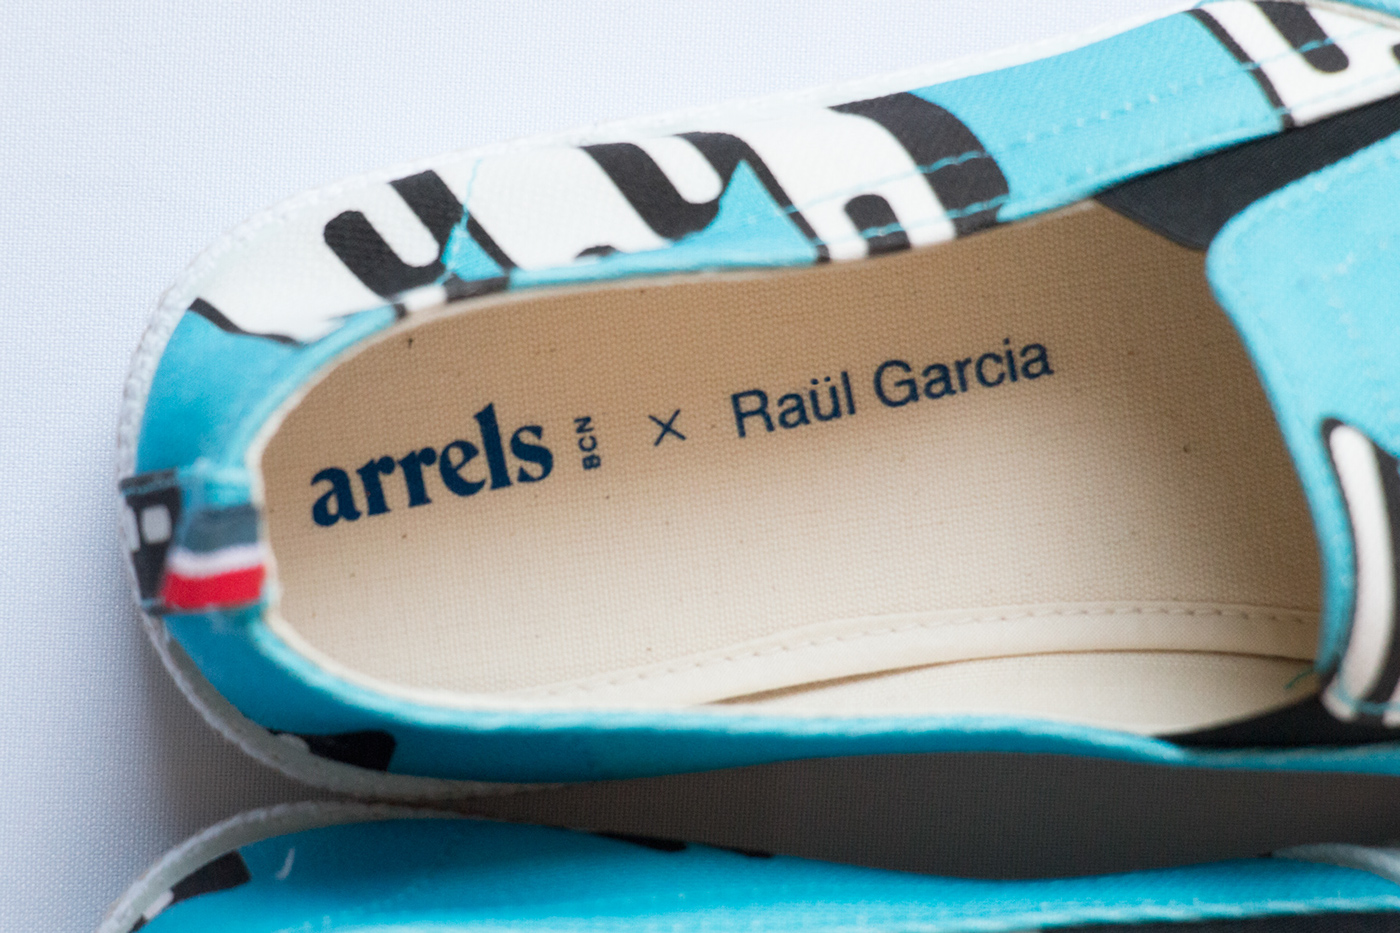 storytelling   sounds concept barcelona sketch colour shoes ARRELS  design pattern brand